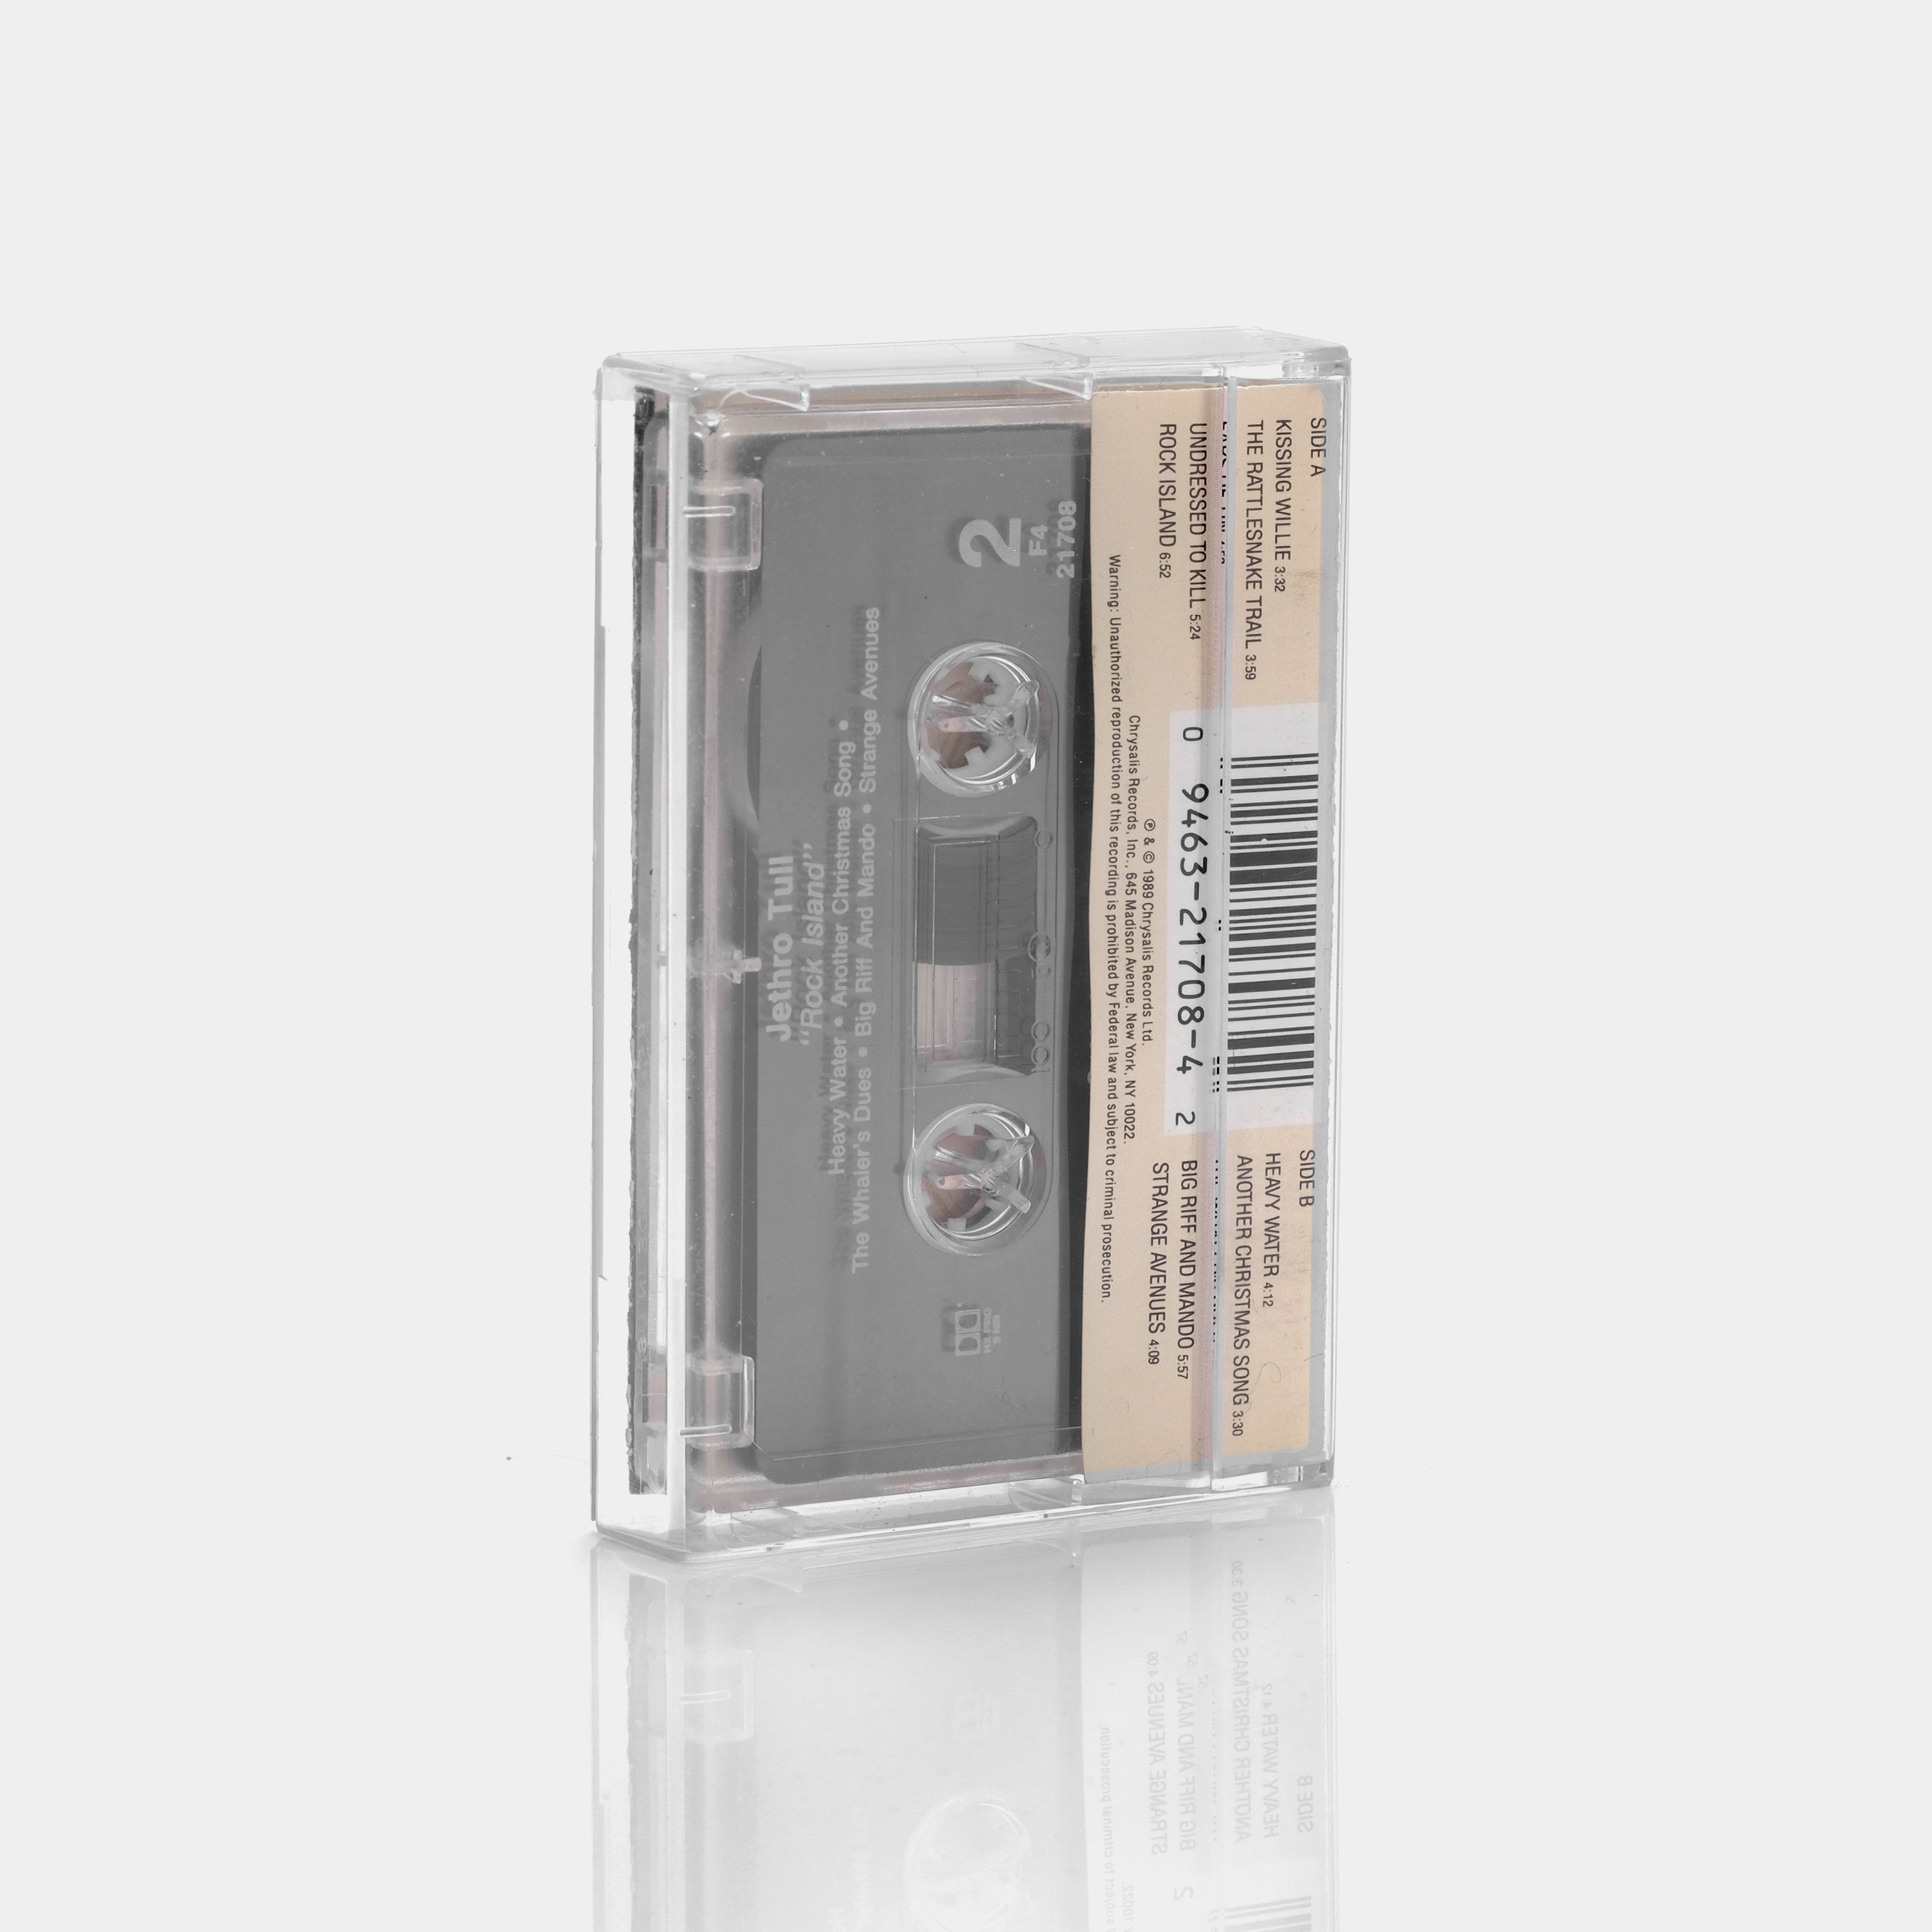 Jethro Tull - Rock Island Cassette Tape